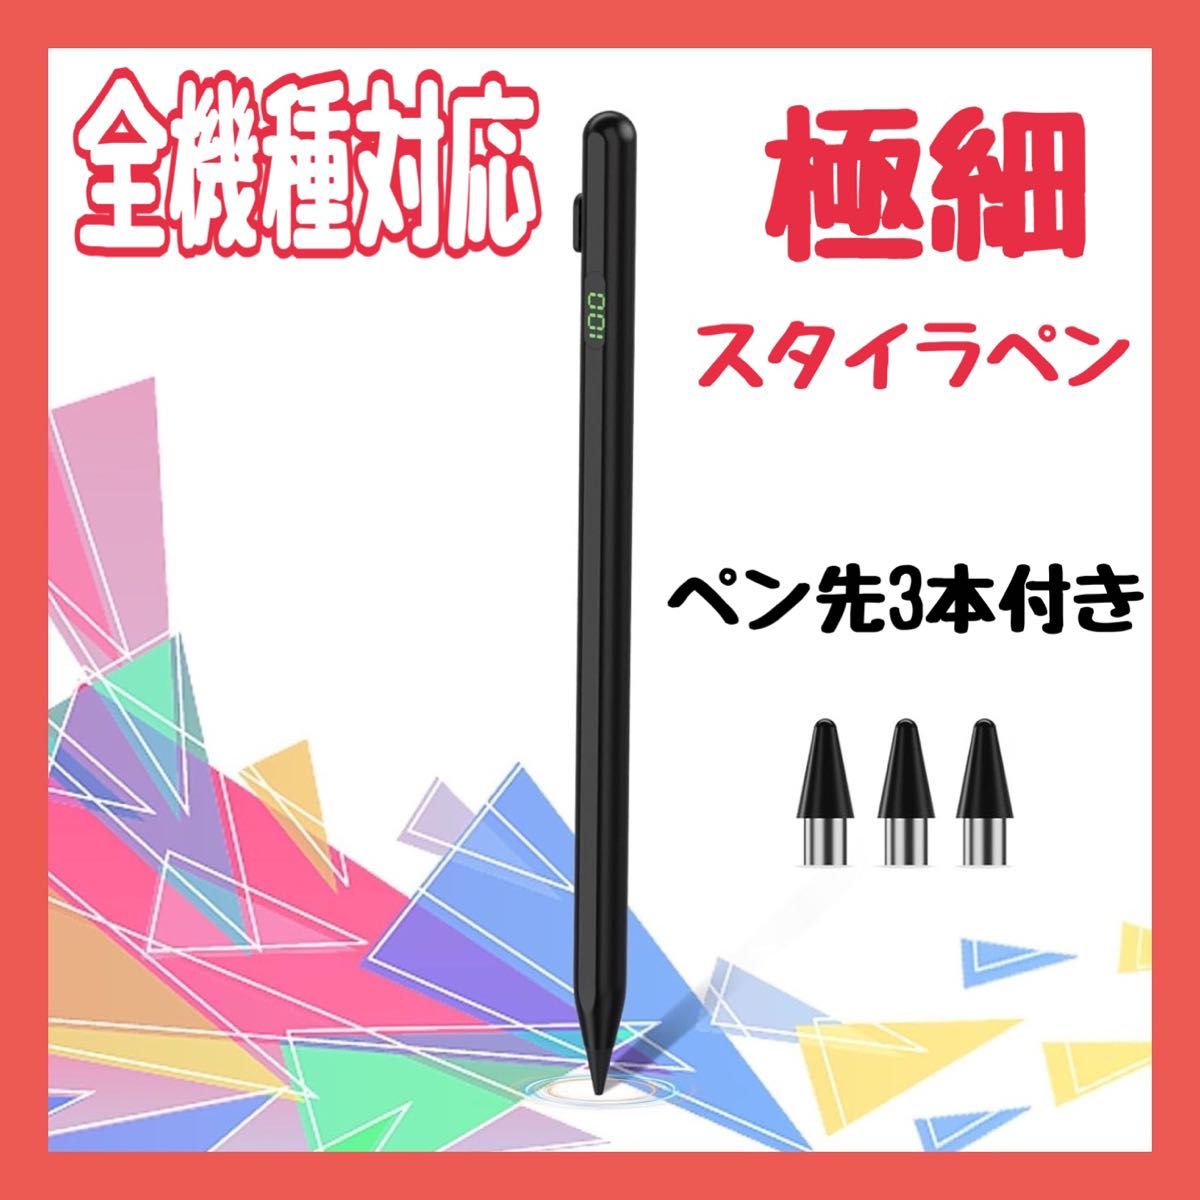 極細タッチペン スタイラスペン スマホ タブレット ペン 高精度 全機種対応 磁気吸着 急速充電 軽量 耐久性 ペン先3本付き 黒